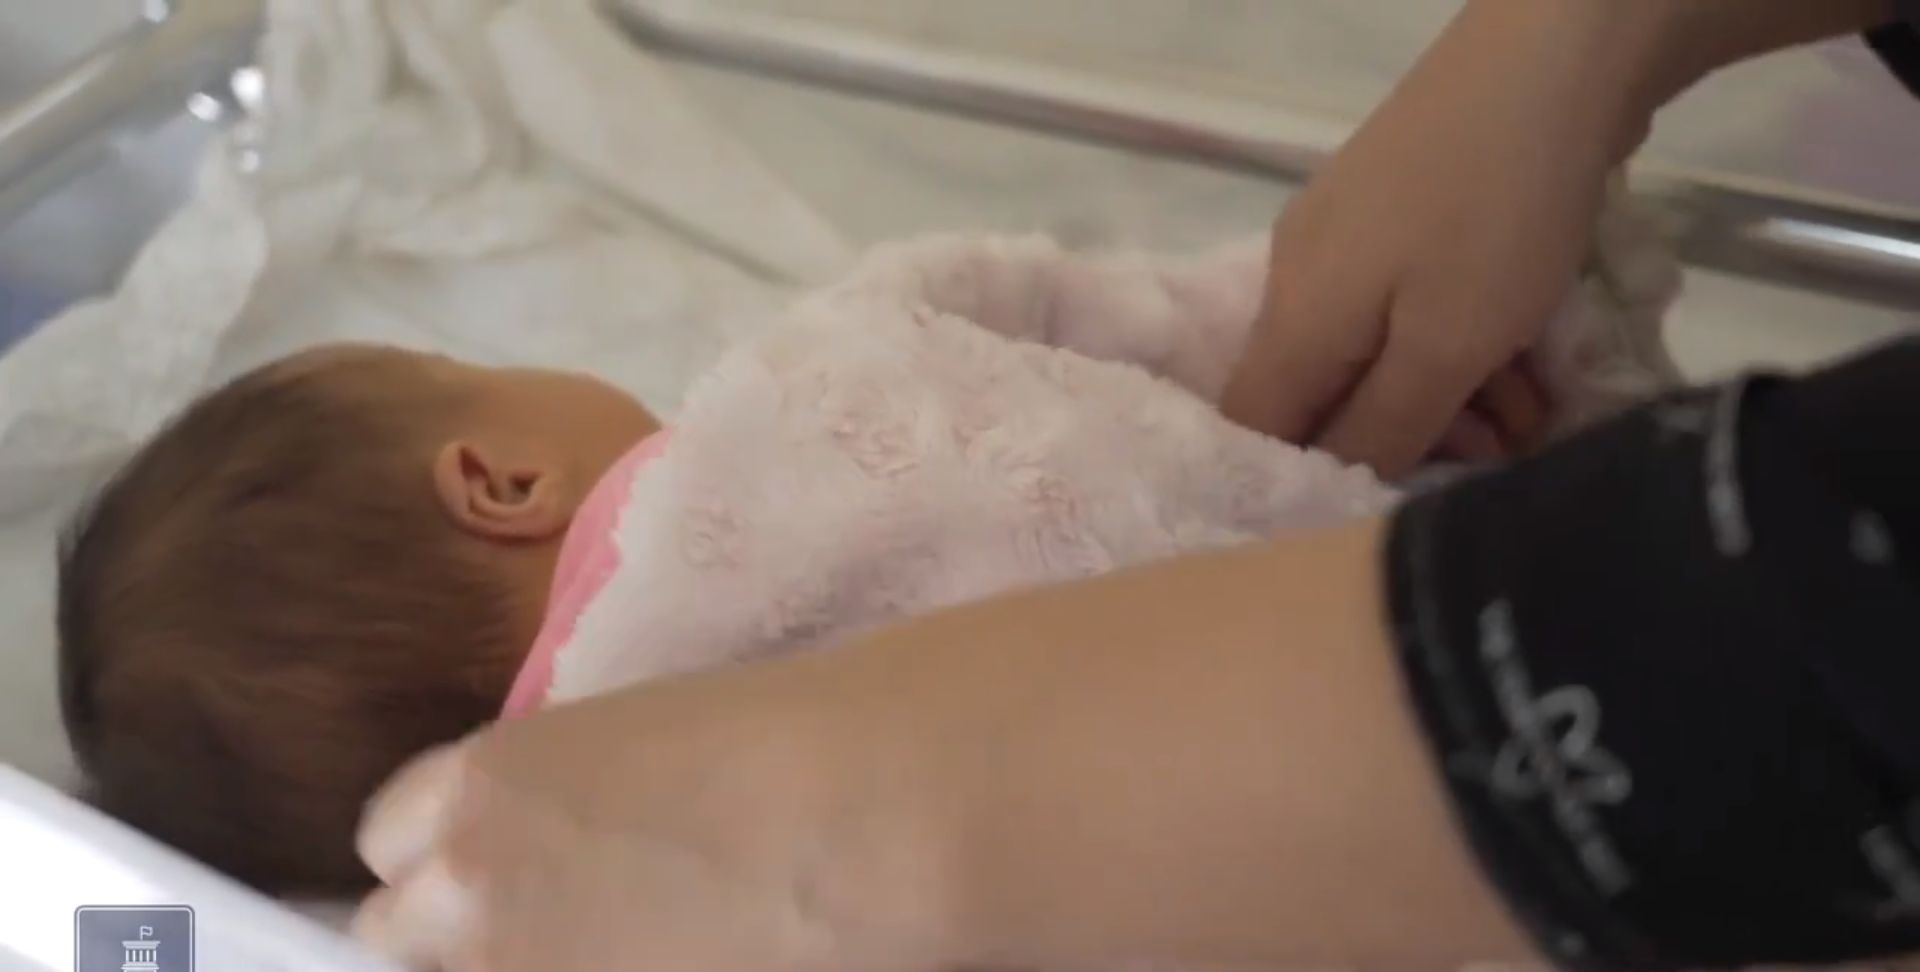 ԱՆ-ն փորձելու է նվազեցնել կեսարյան հատումներով ծննդաբերությունների թիվը (տեսանյութ)